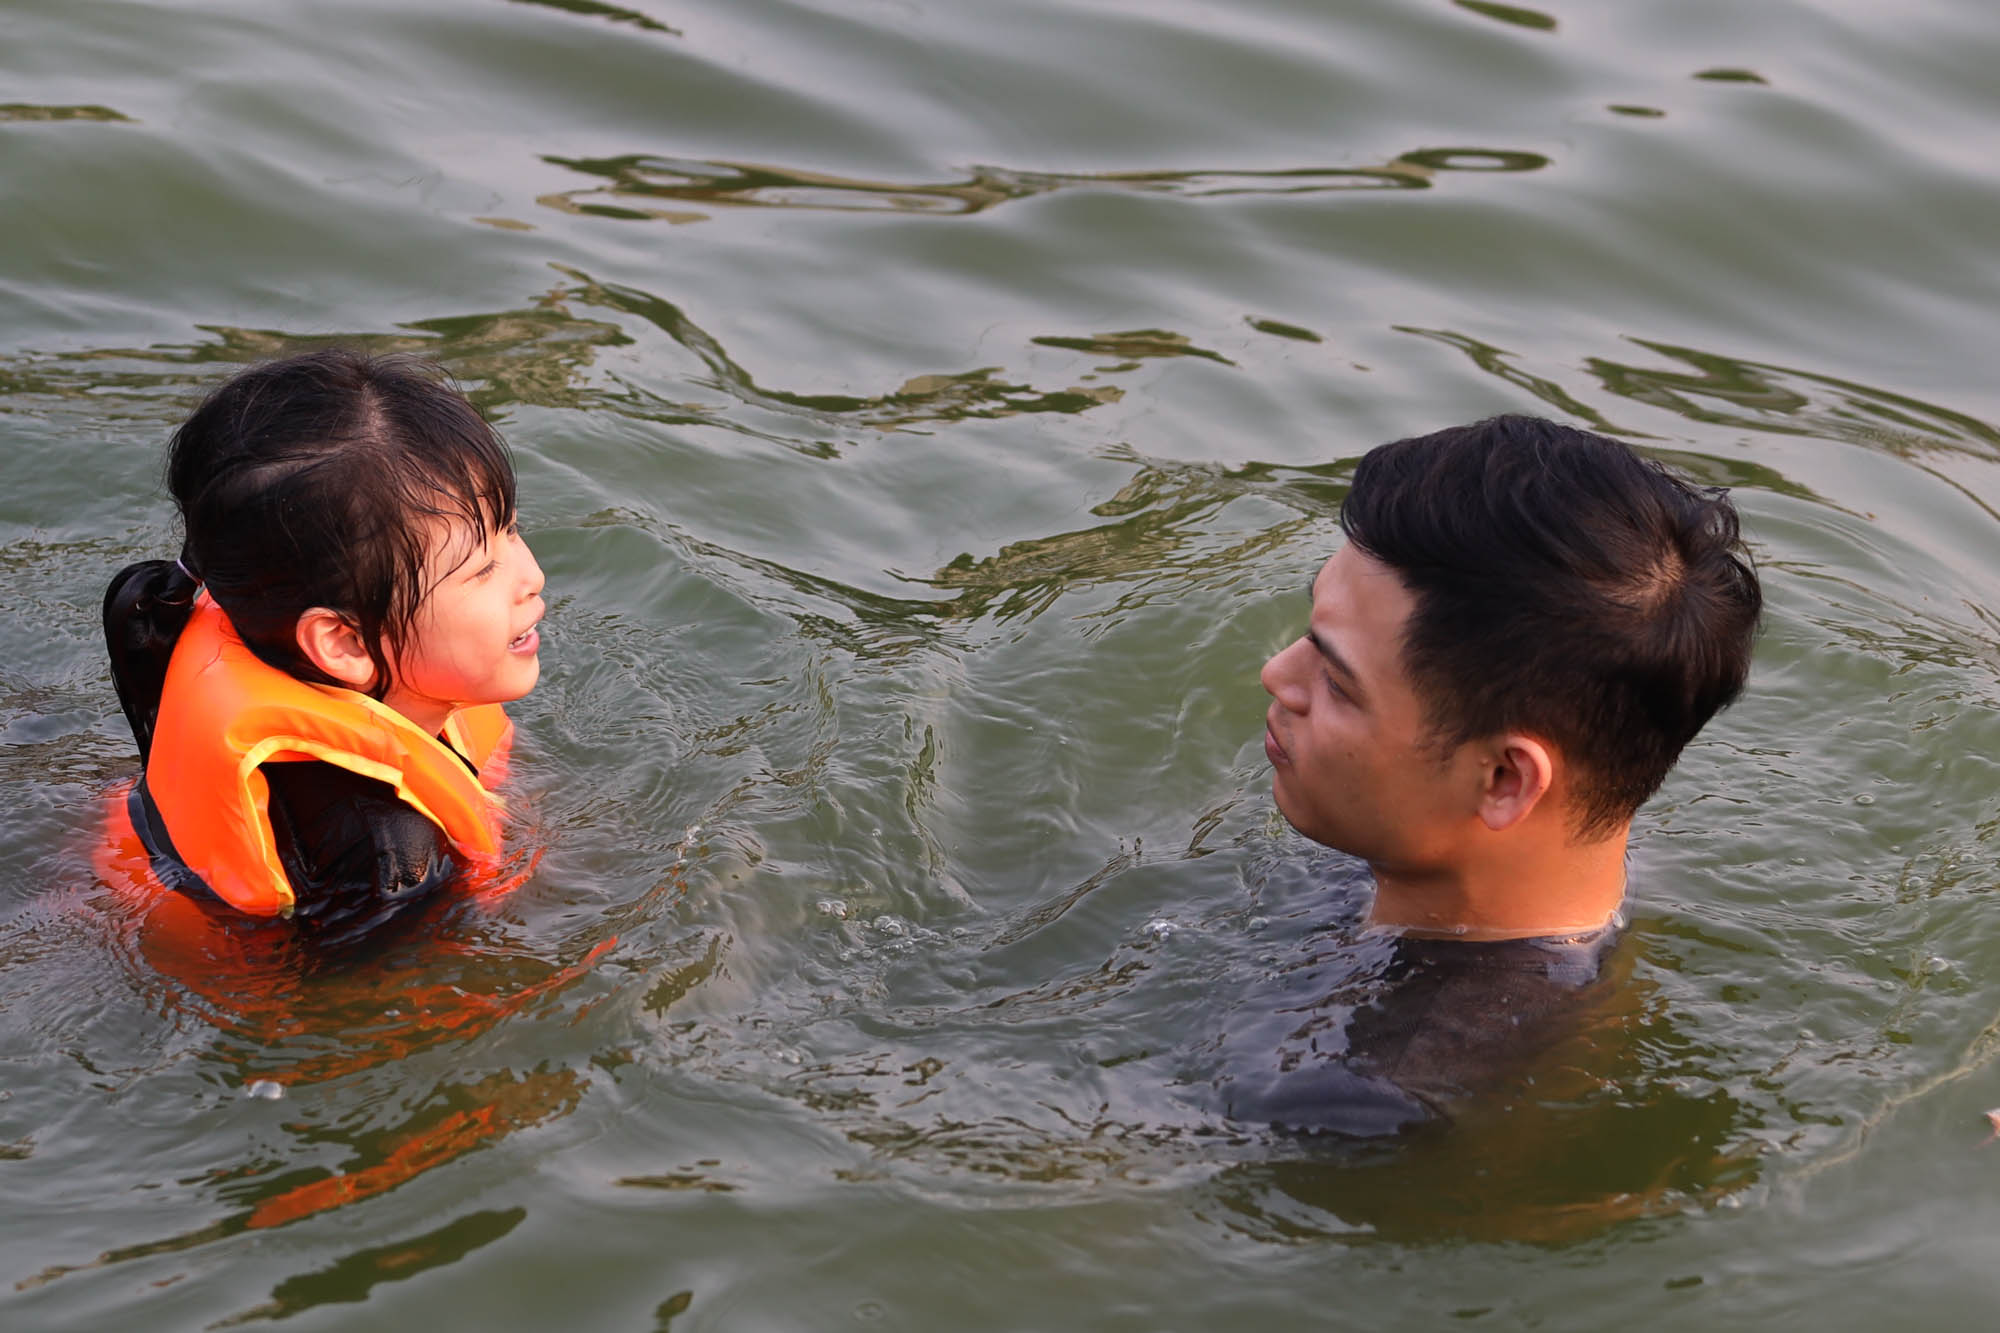 Ao làng thành 'bể bơi miễn phí', người Hà Nội đổ xô đi tắm giải nhiệt - Ảnh 8.